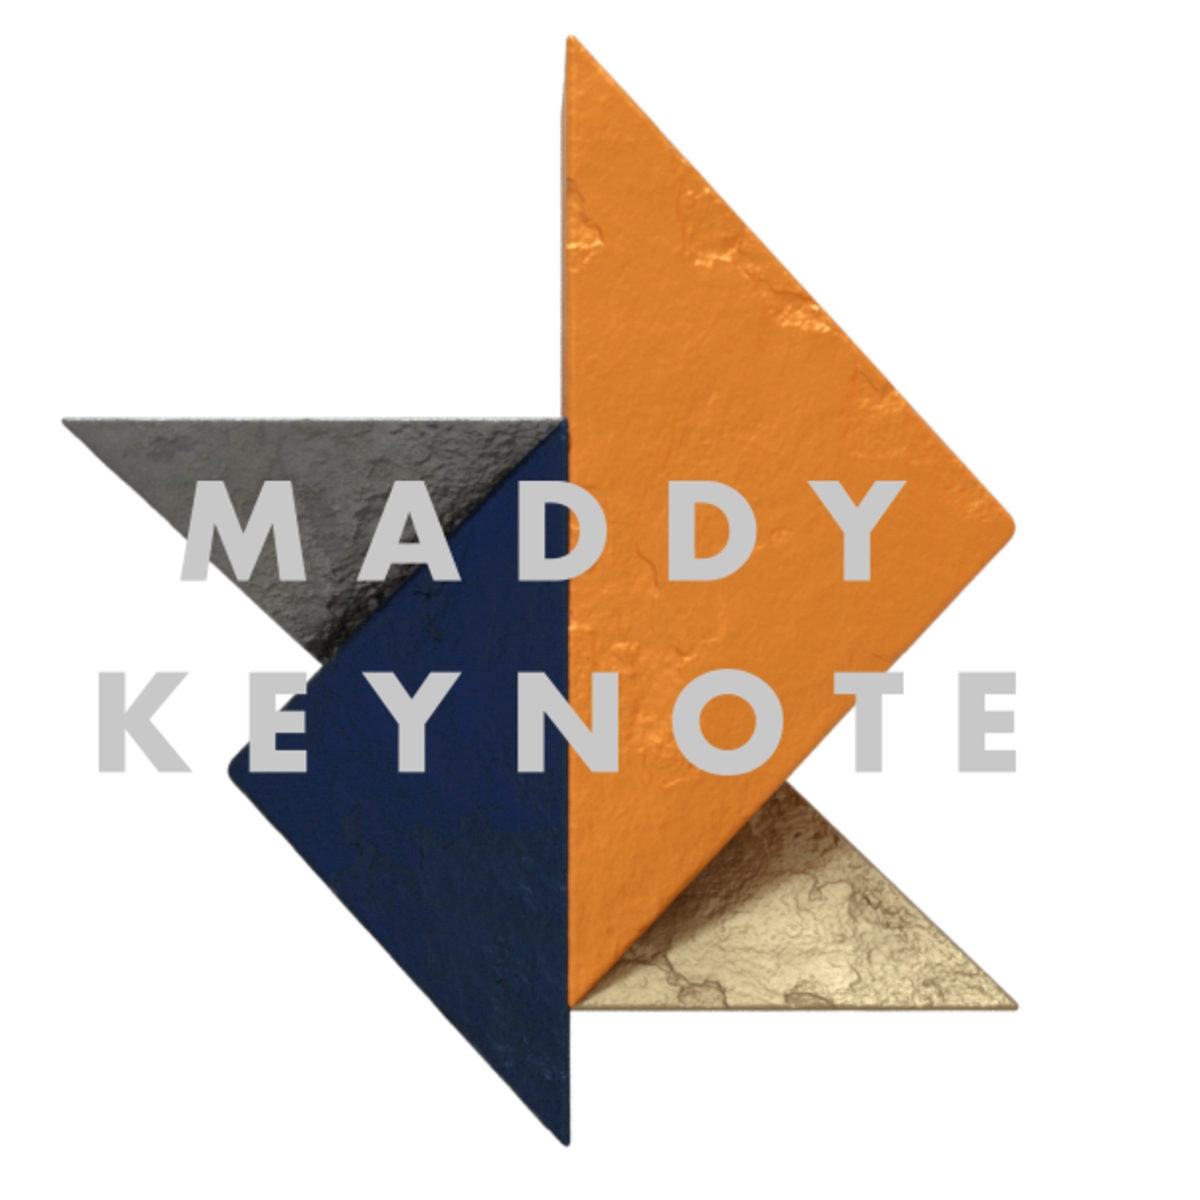 Maddy Keynote : gagnez des places pour l'événement tech & business édition 2020 !